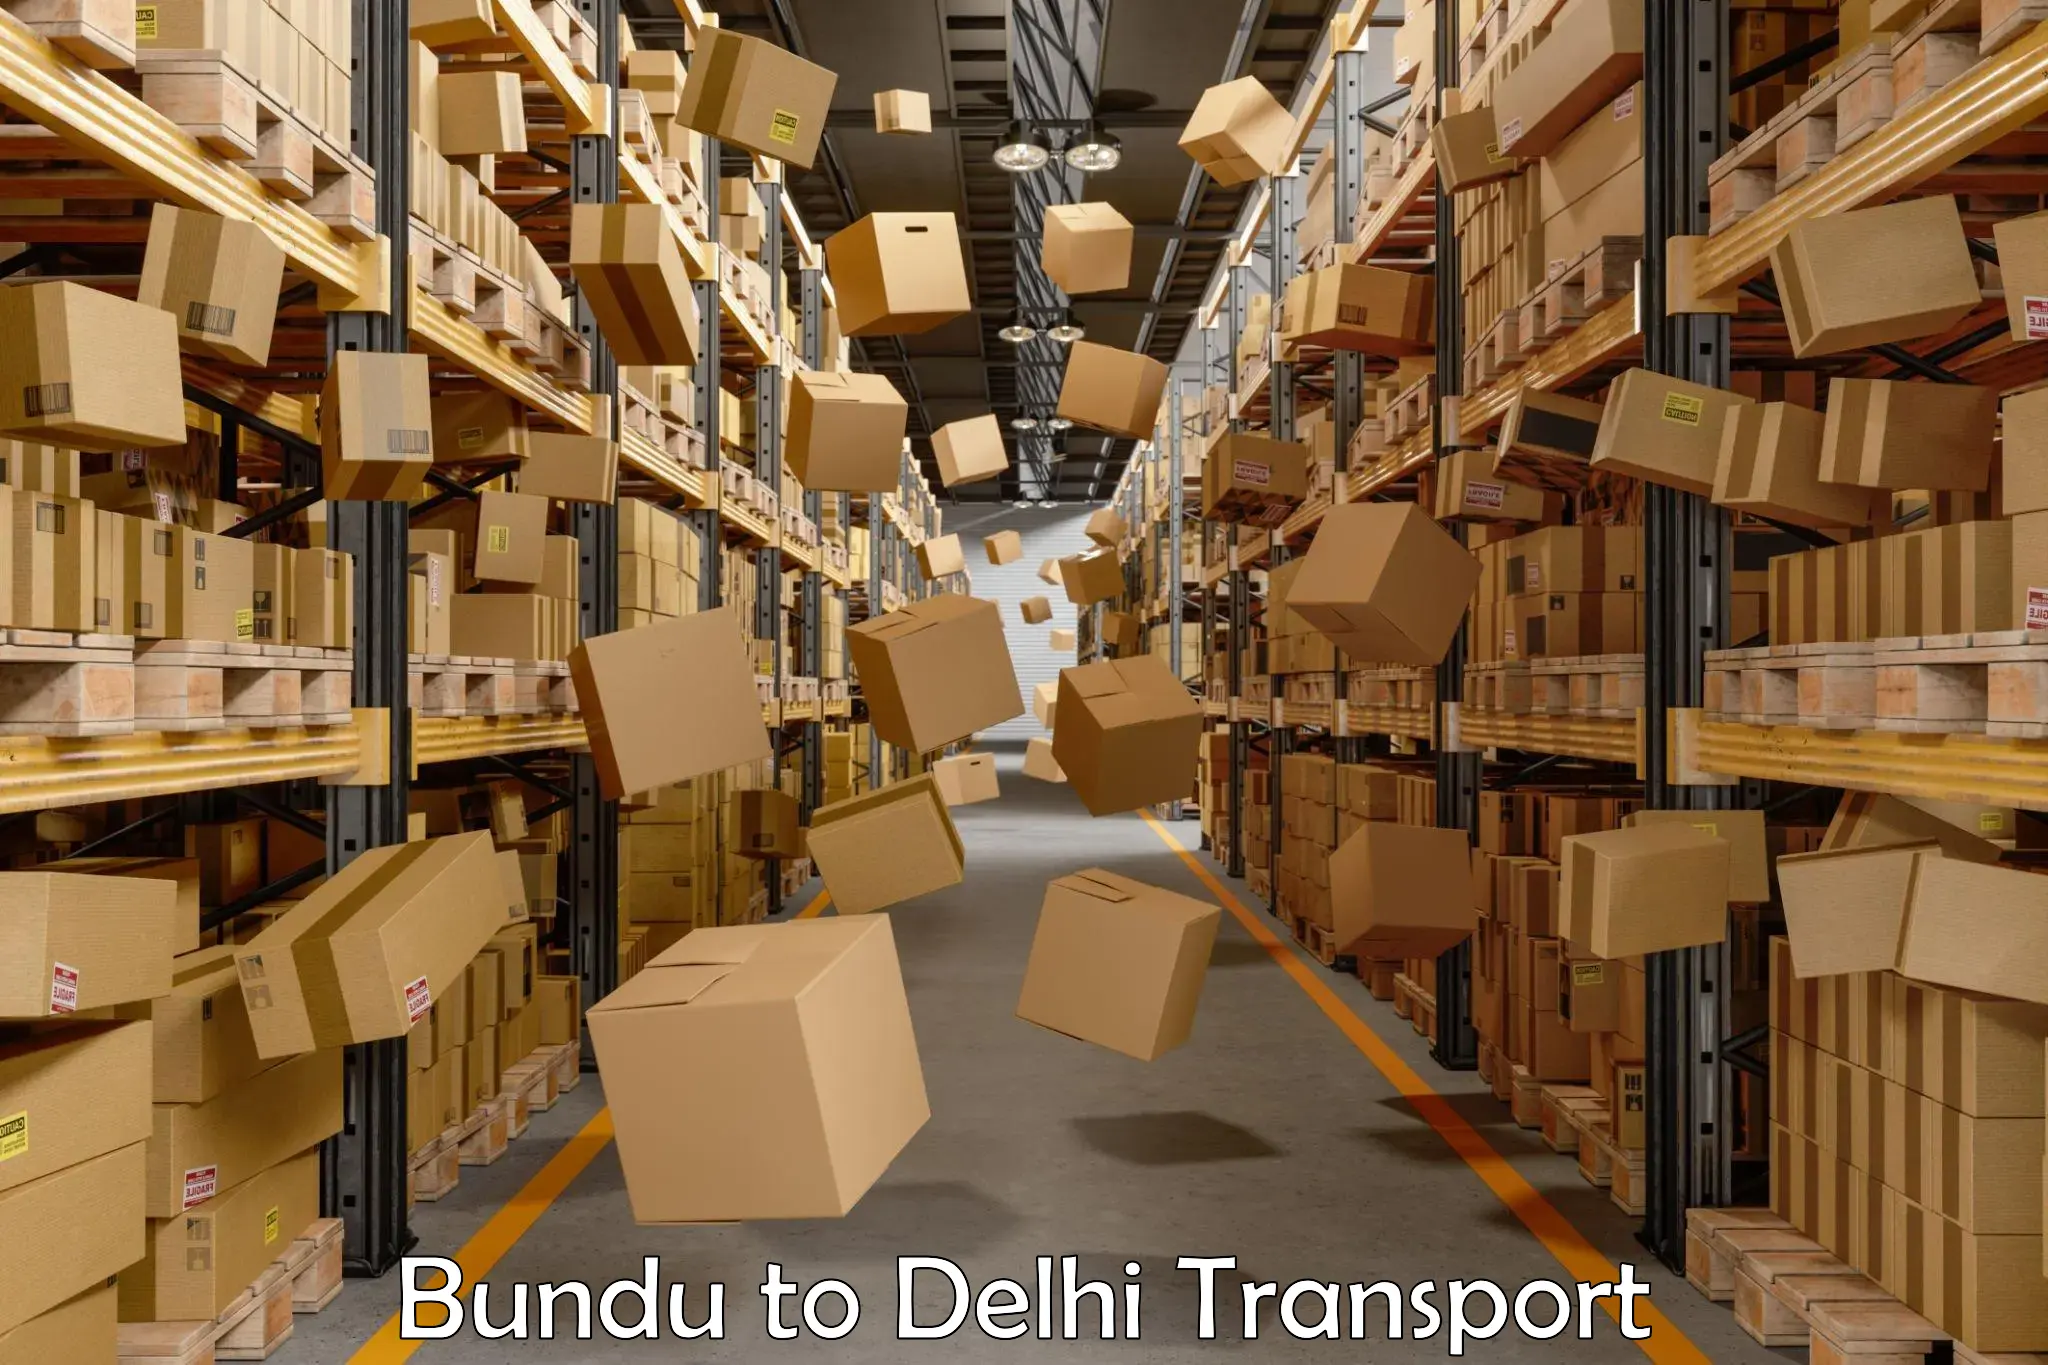 Container transport service Bundu to Sarojini Nagar